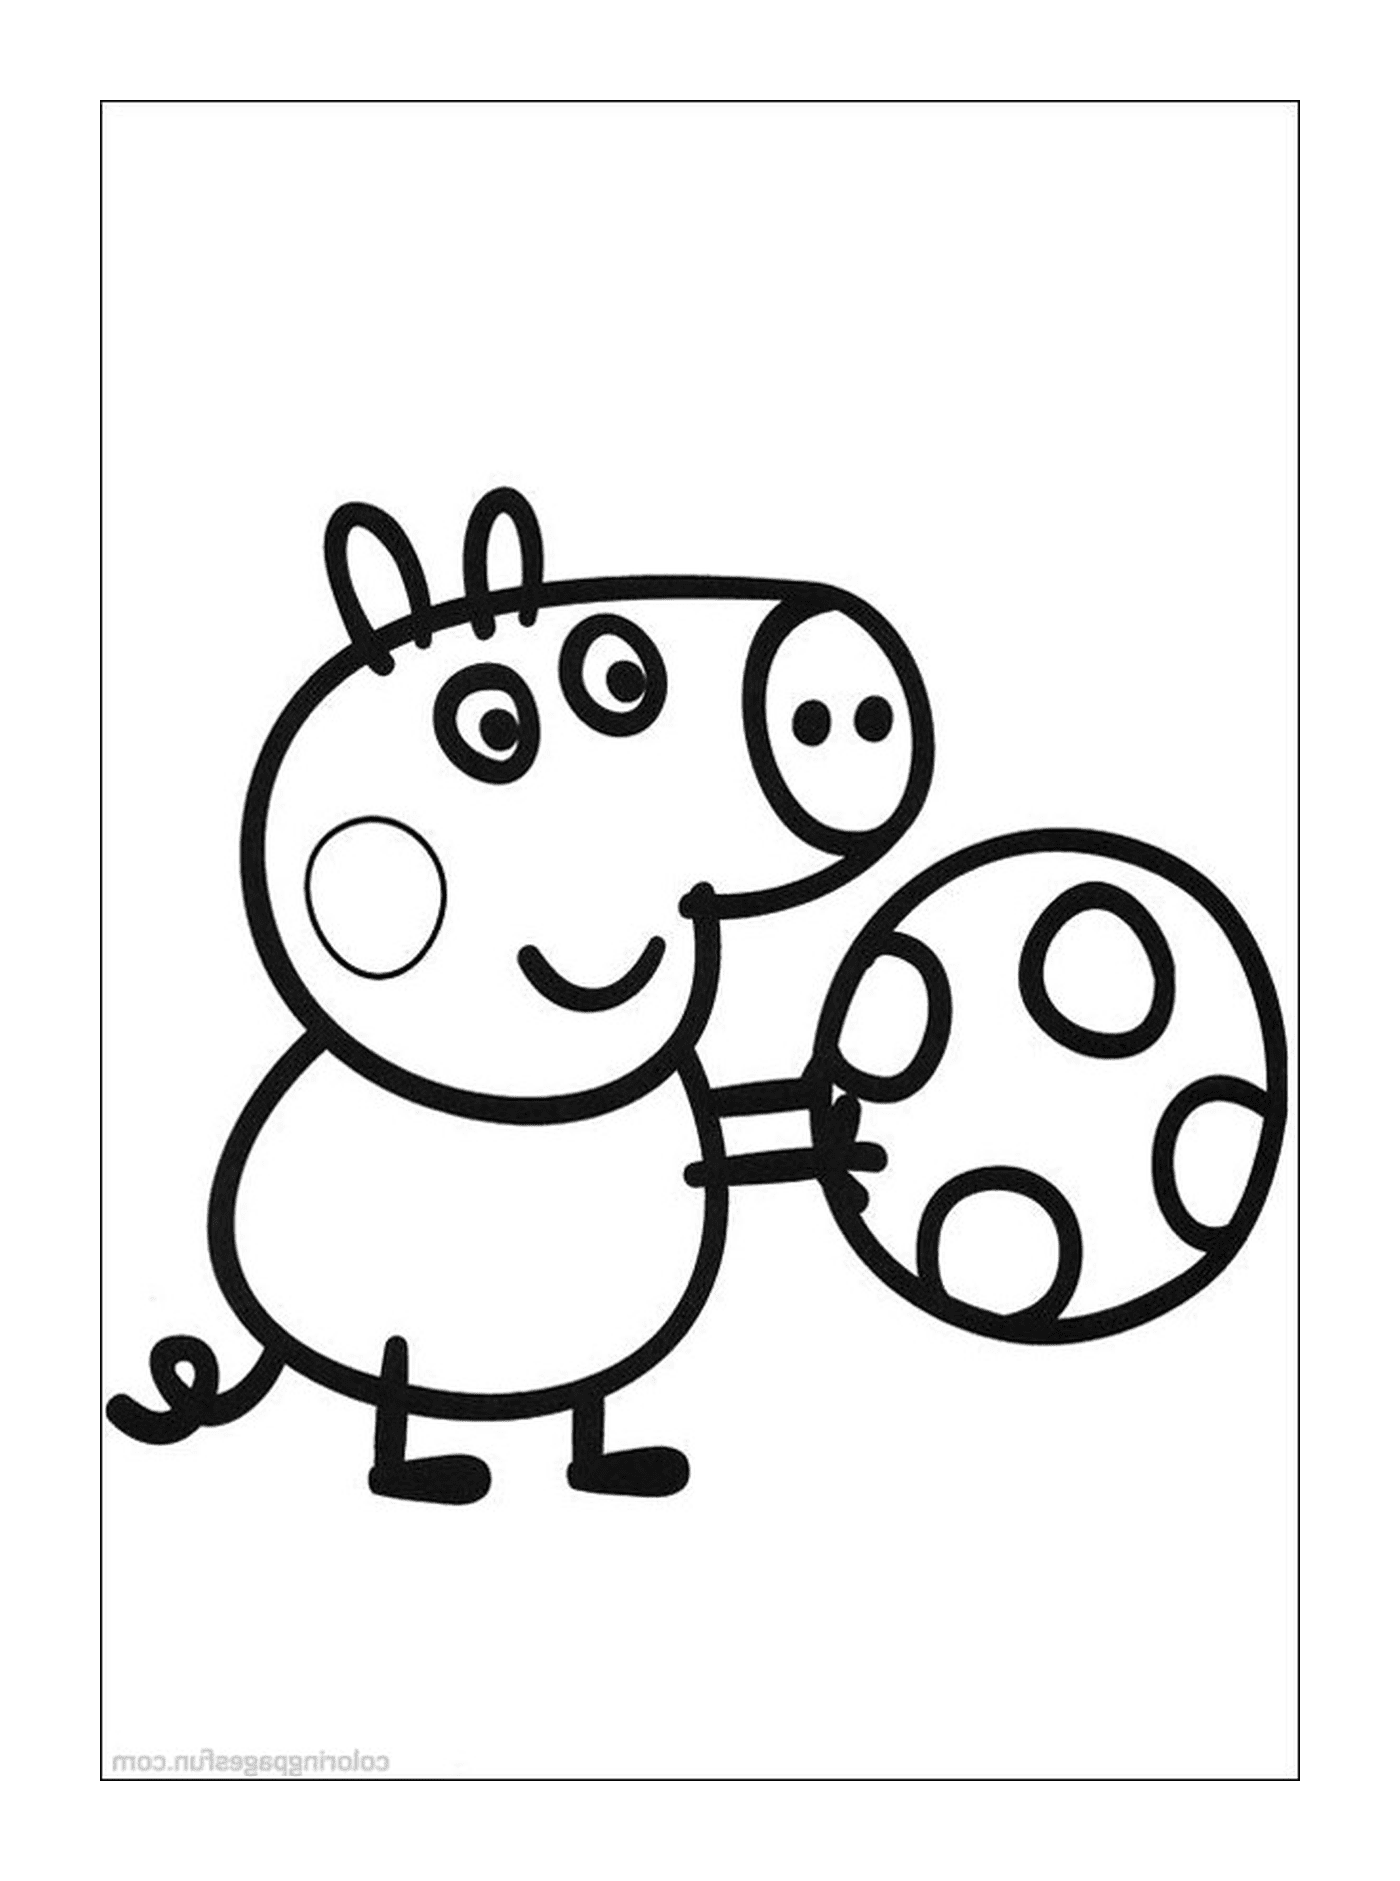  A pig holding a soccer ball 